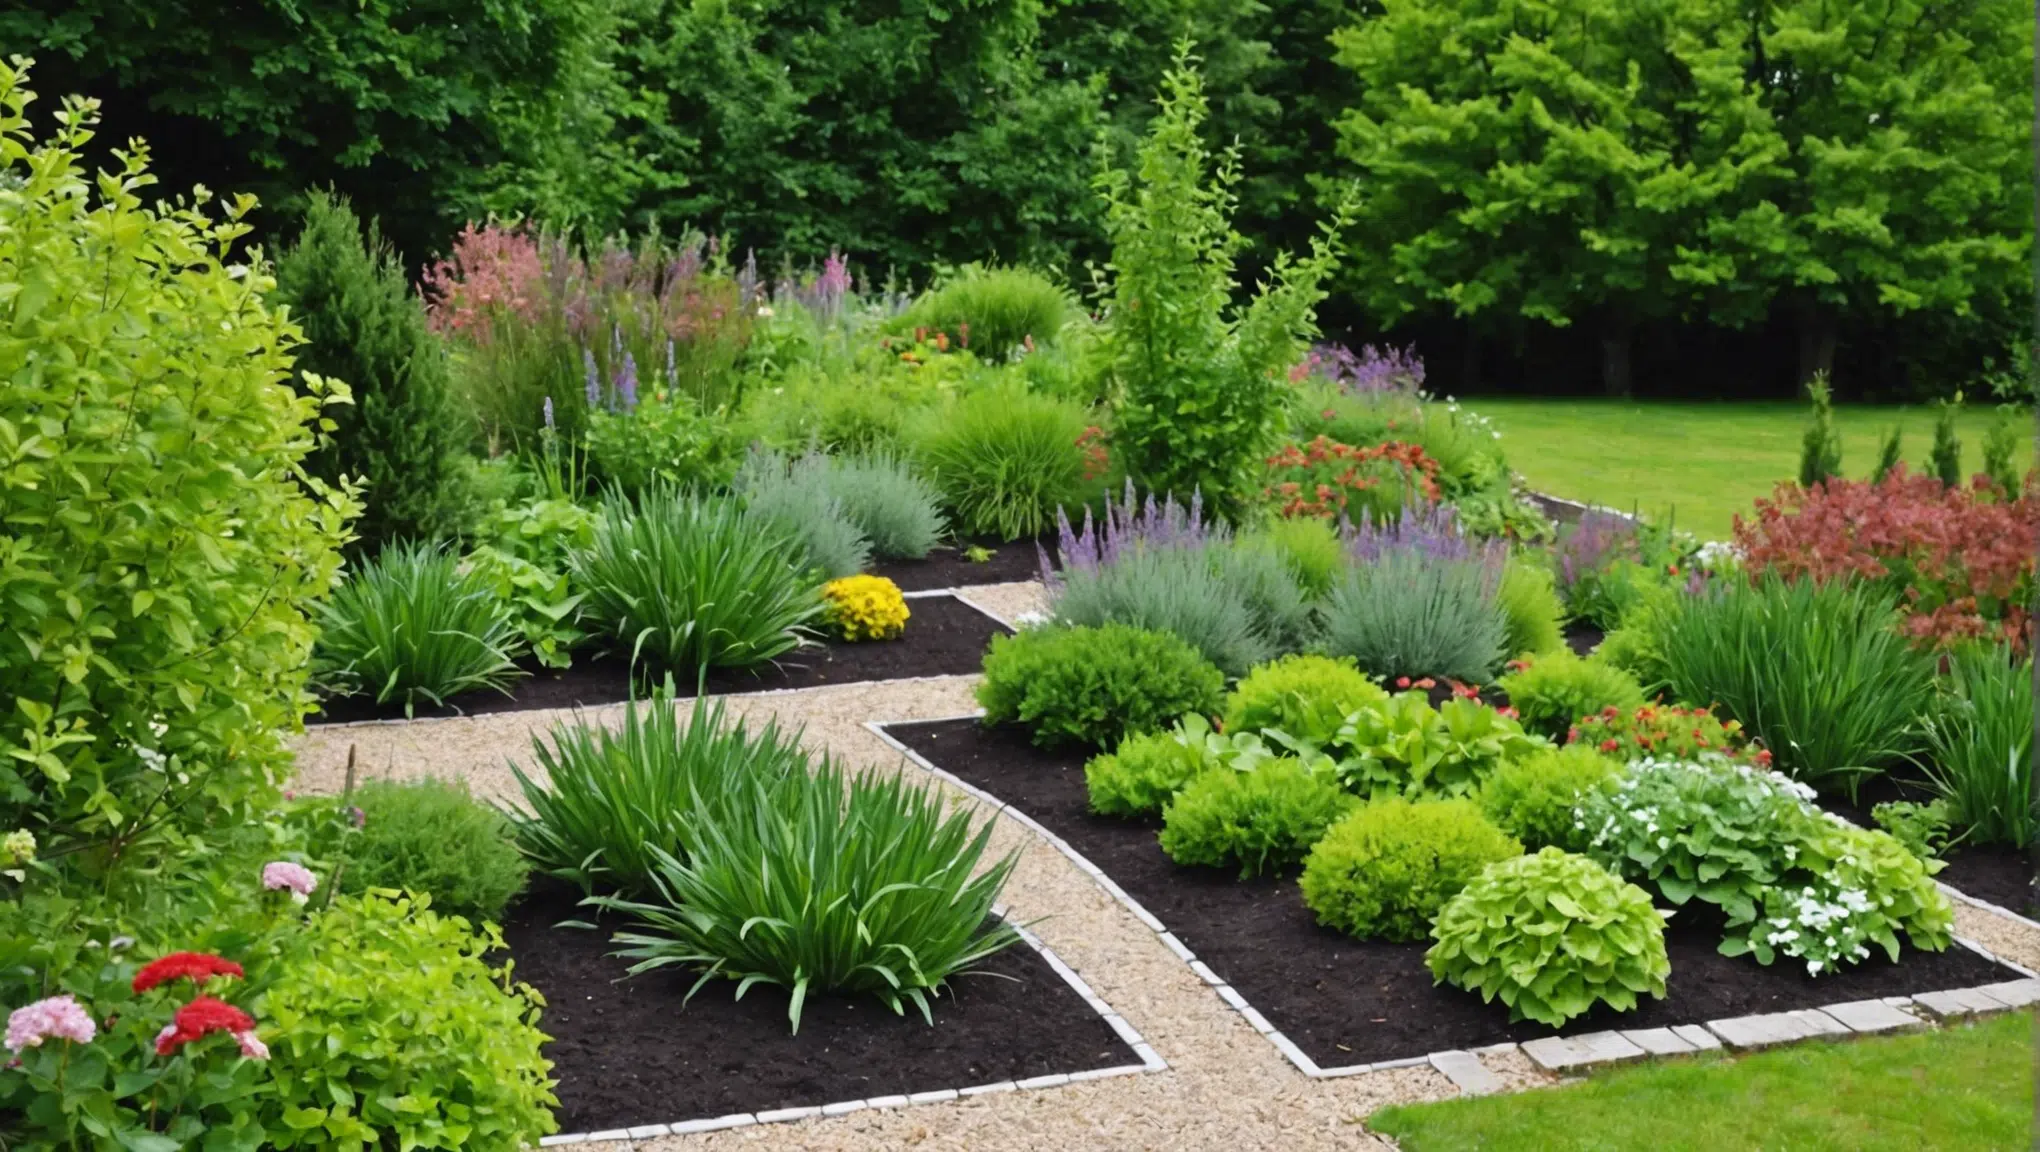 découvrez comment créer un jardin bio luxuriant grâce à ces précieux conseils pratiques pour une approche respectueuse de l'environnement et une abondance de verdure.